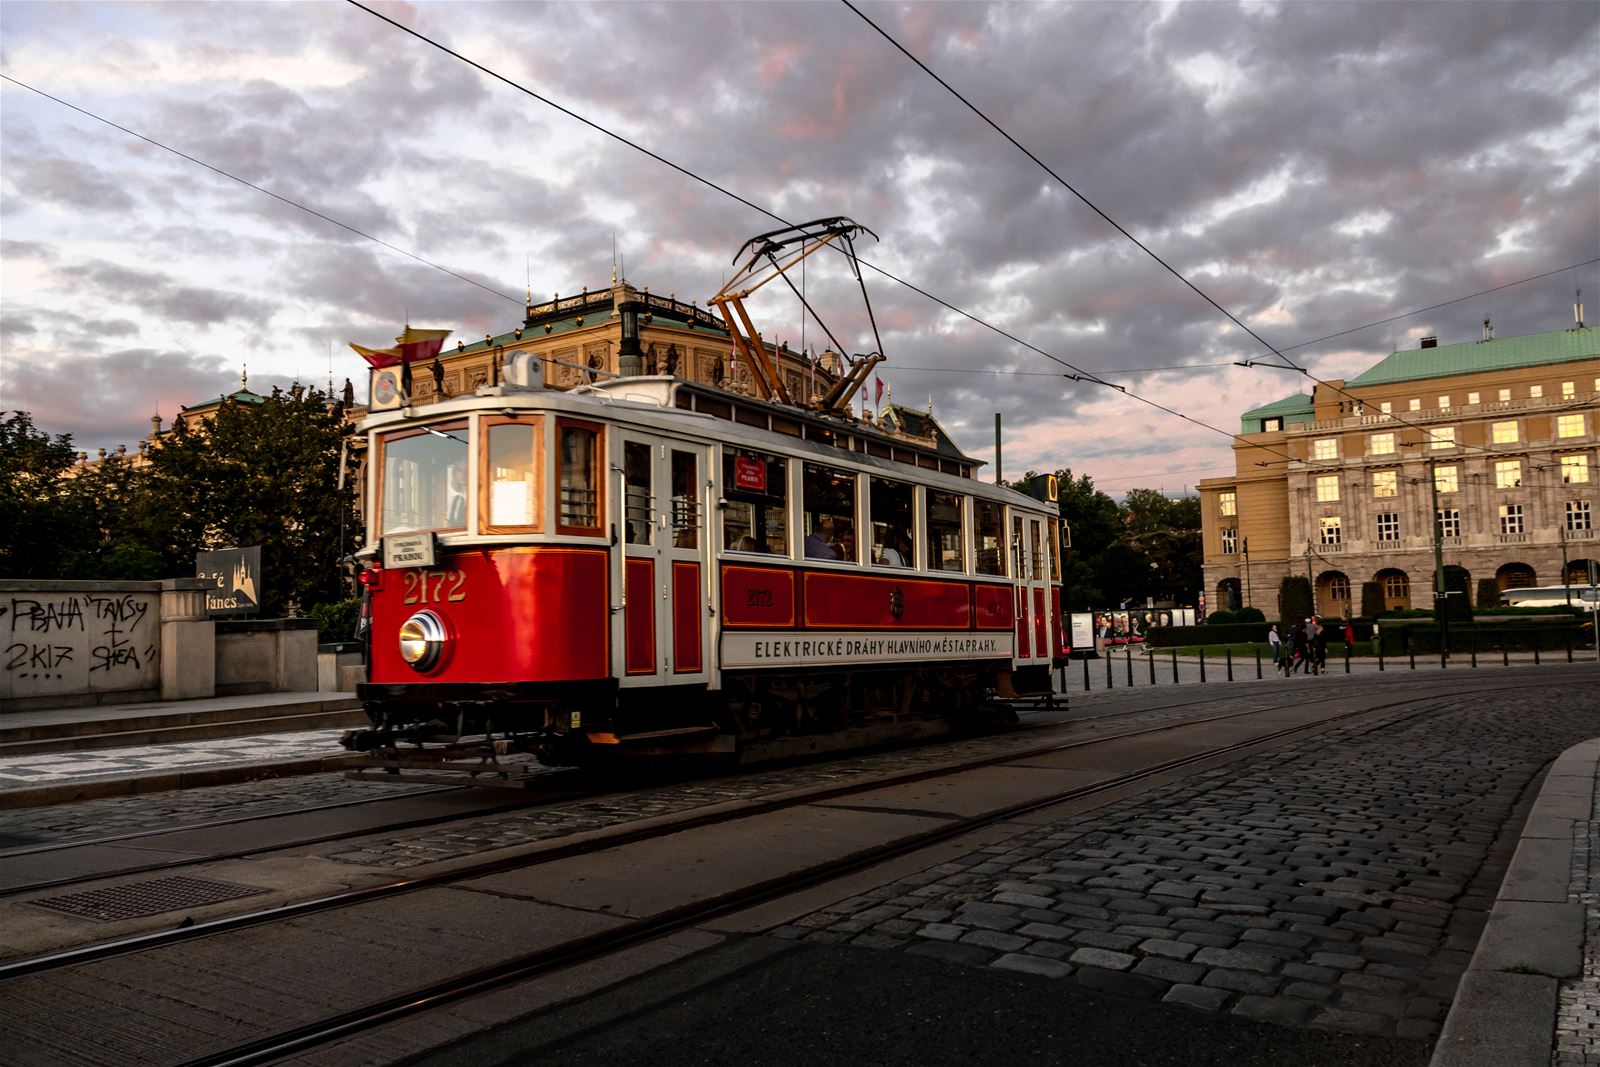 Prague City Tourism_tram